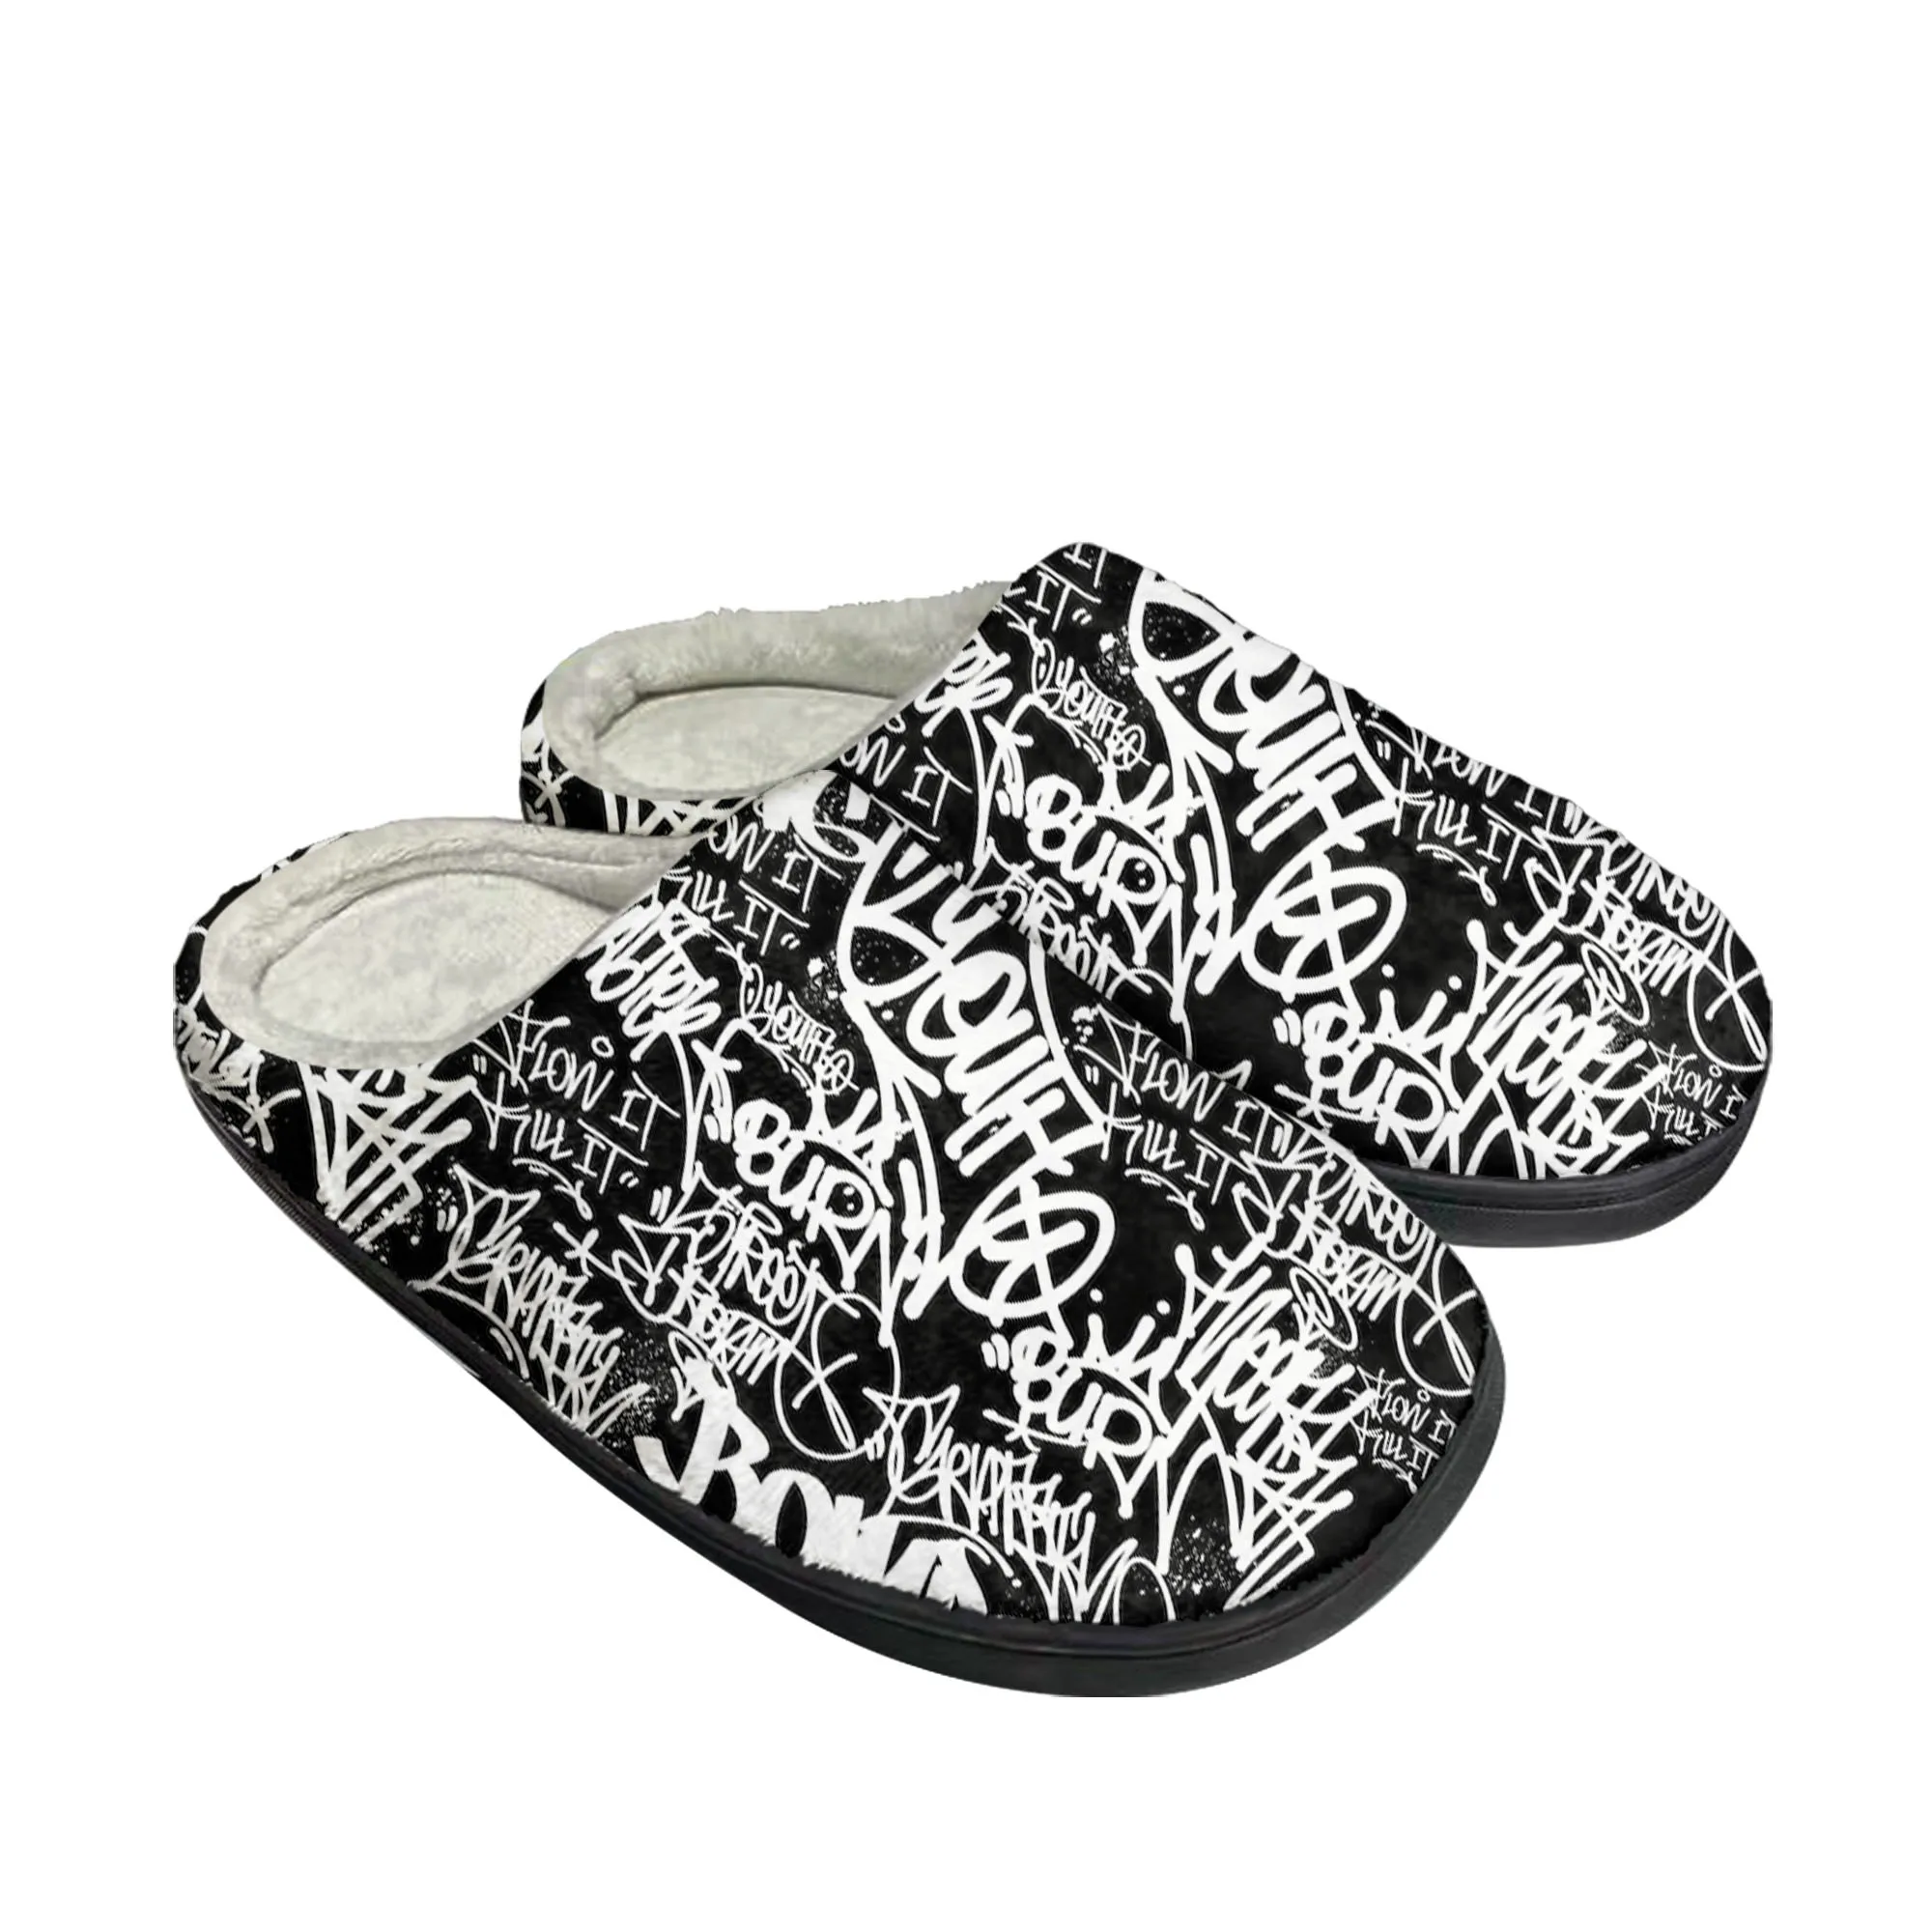 

Домашние хлопковые тапочки в уличном стиле с граффити для мужчин и женщин, плюшевая обувь для спальни, Повседневная сохраняющая тепло обувь, Высококачественная домашняя обувь на заказ